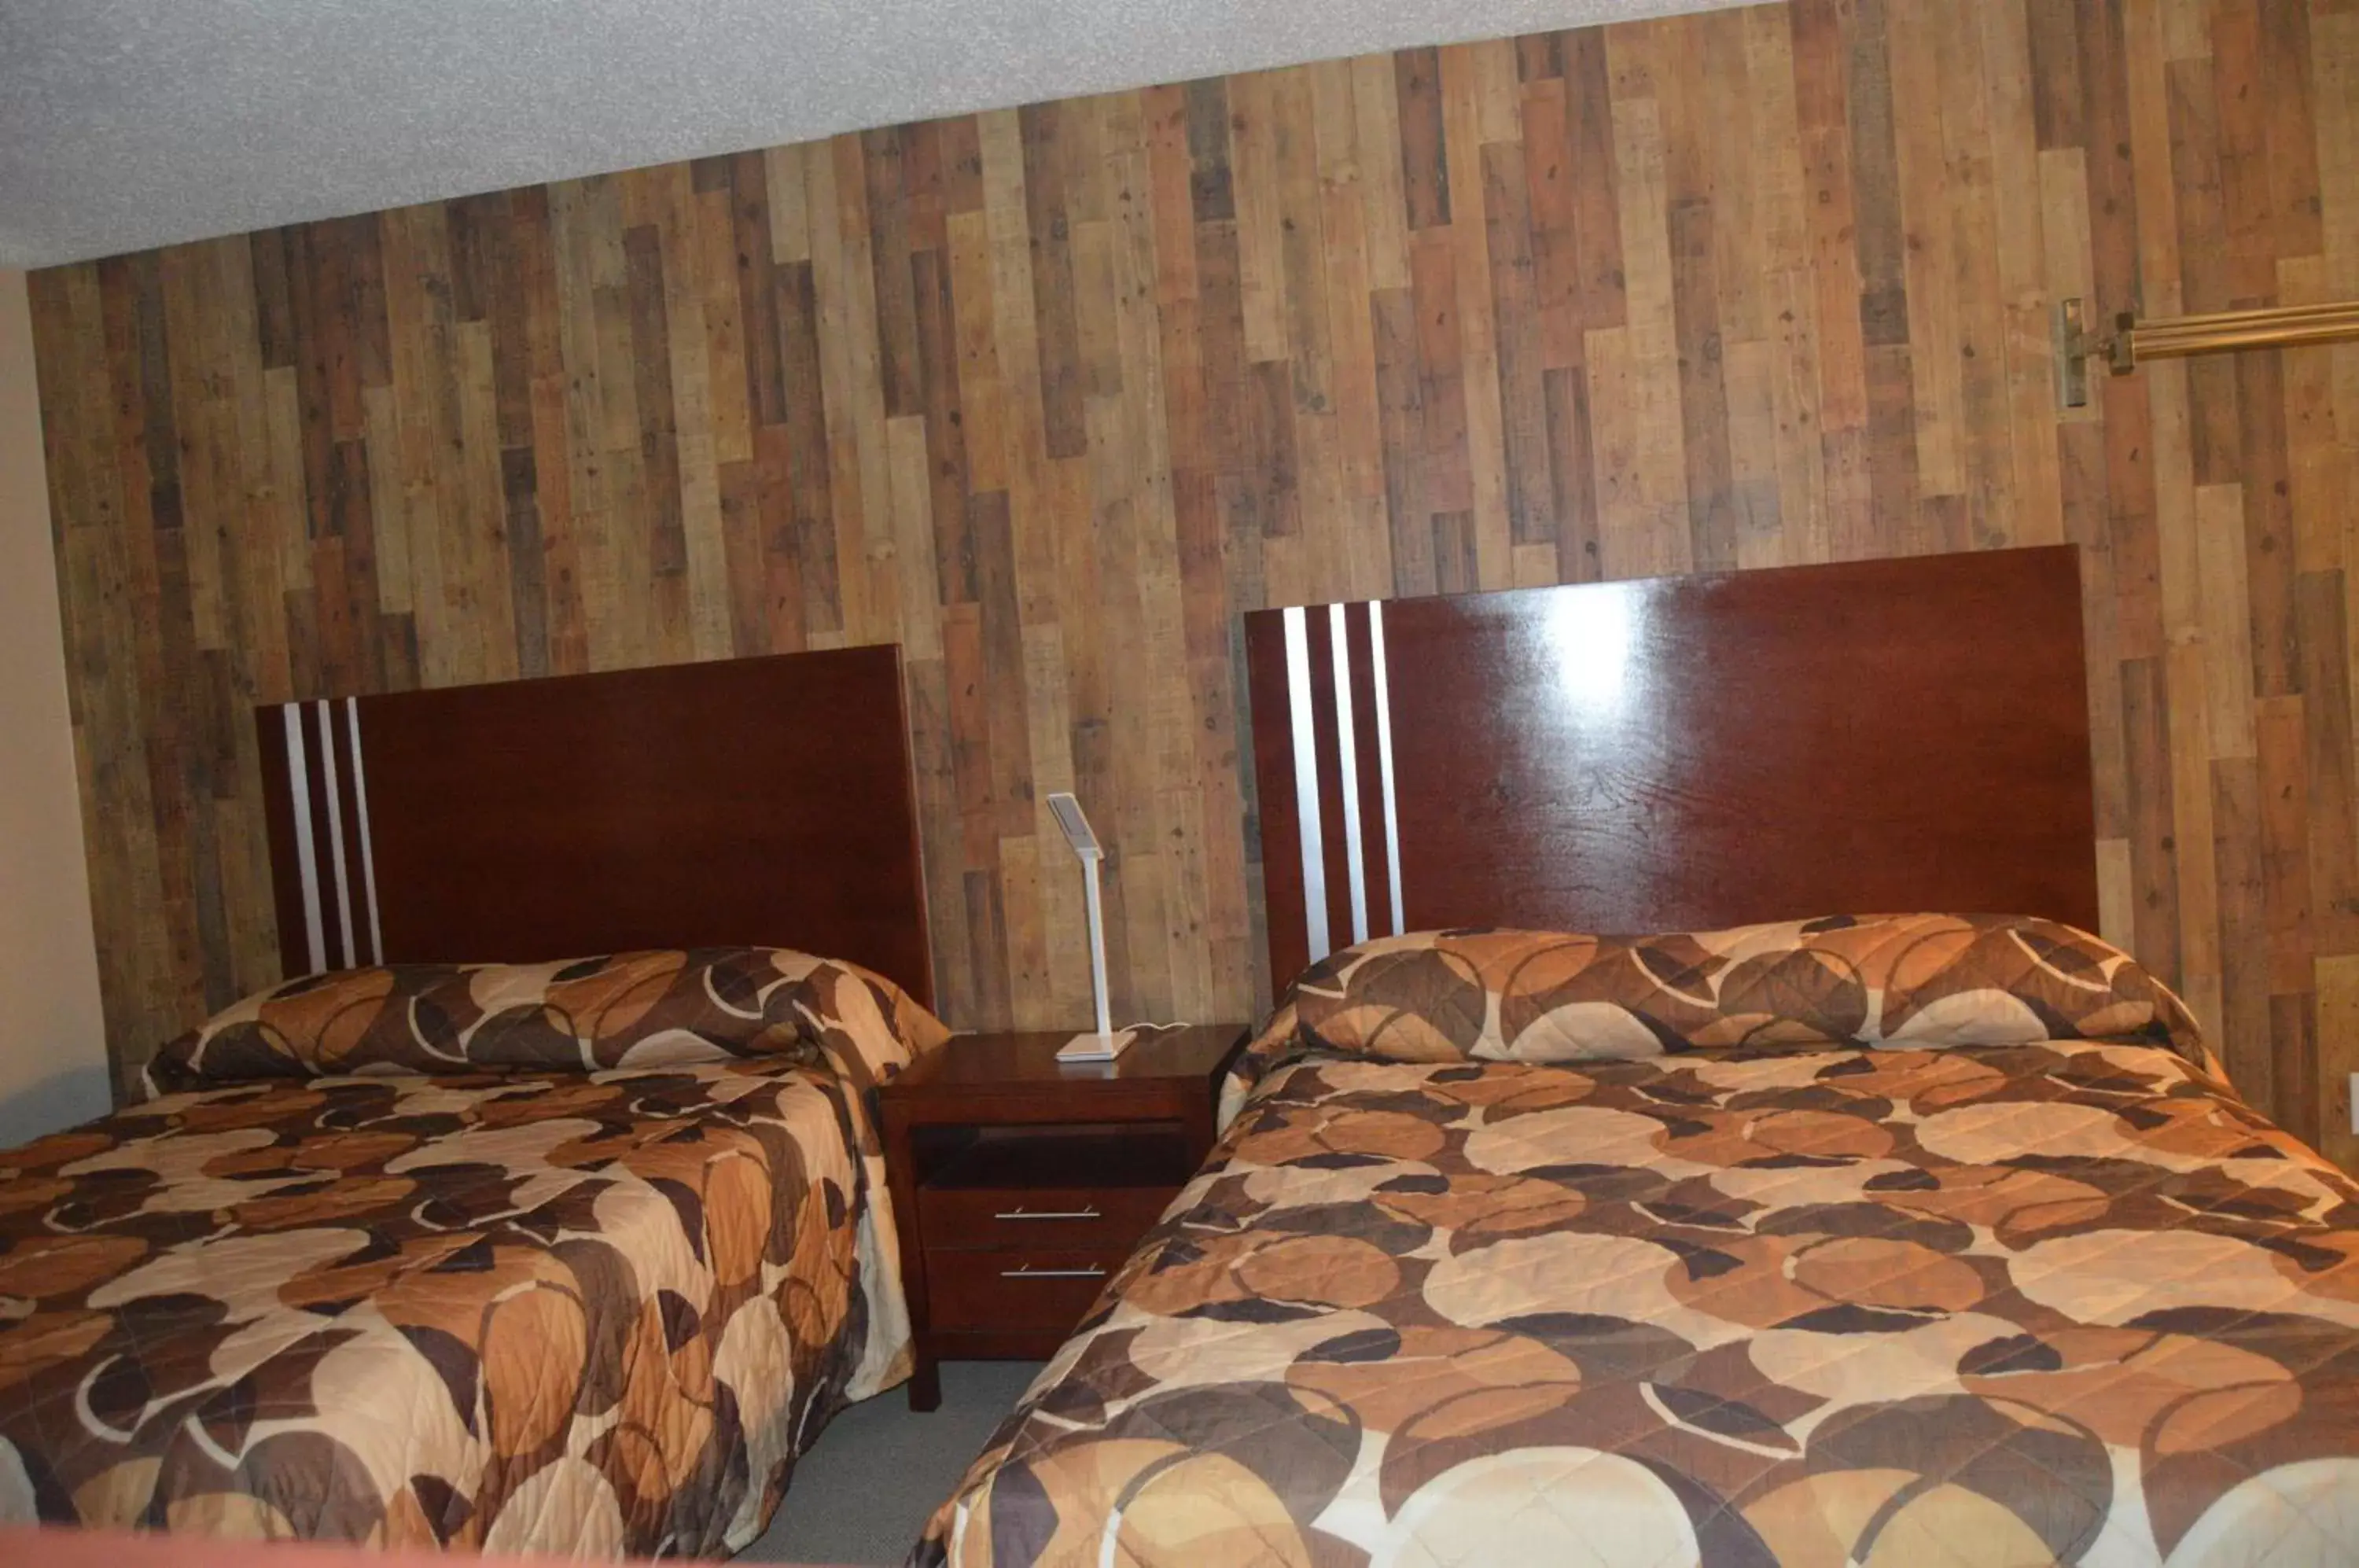 Bed in Wheel Inn Motel